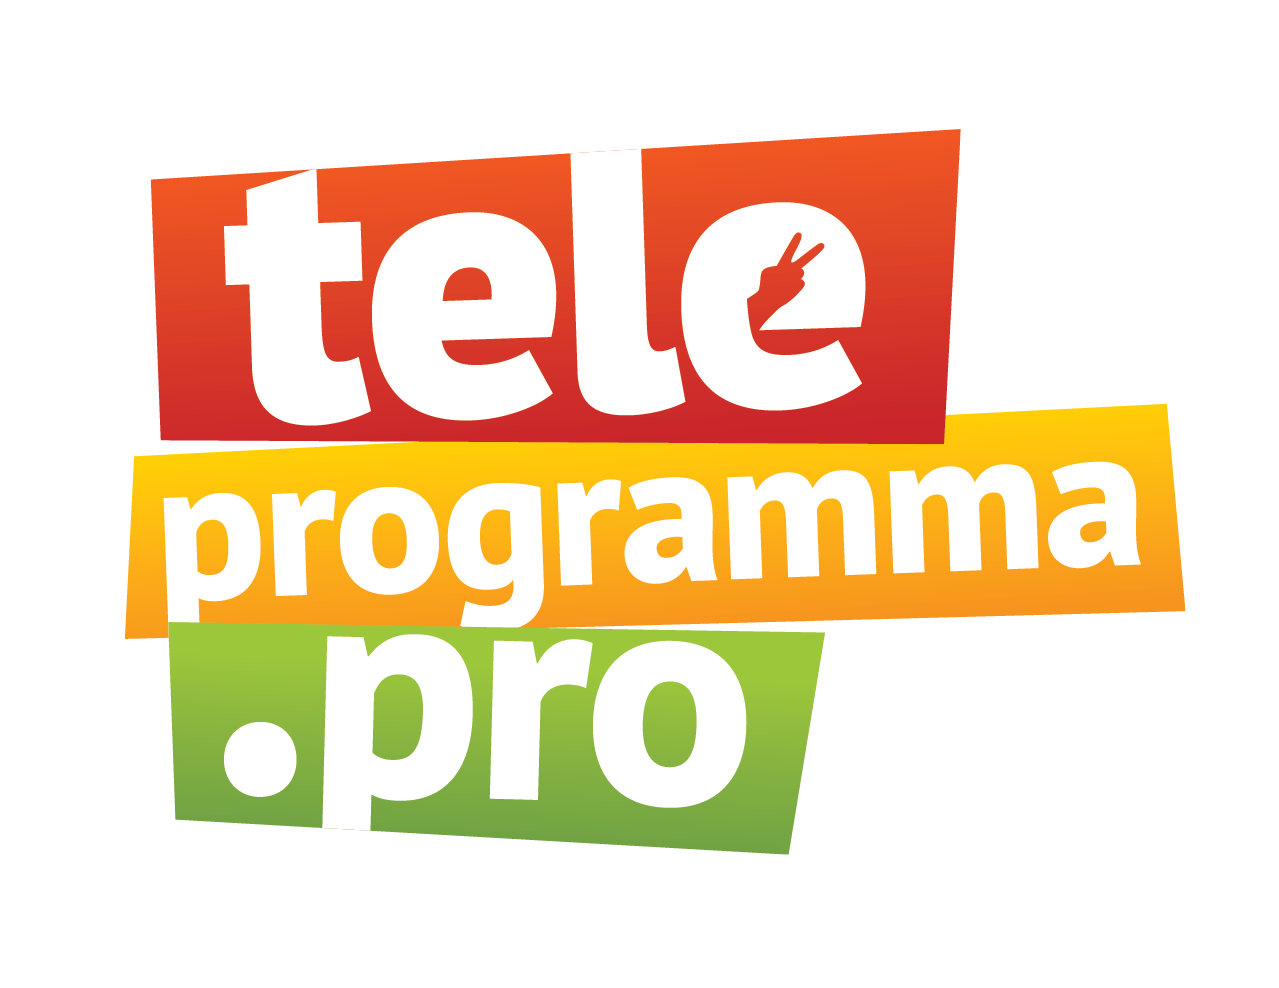 Команда Teleprogramma.pro собралась с духом и прошла 5 самых страшных игр с актерами